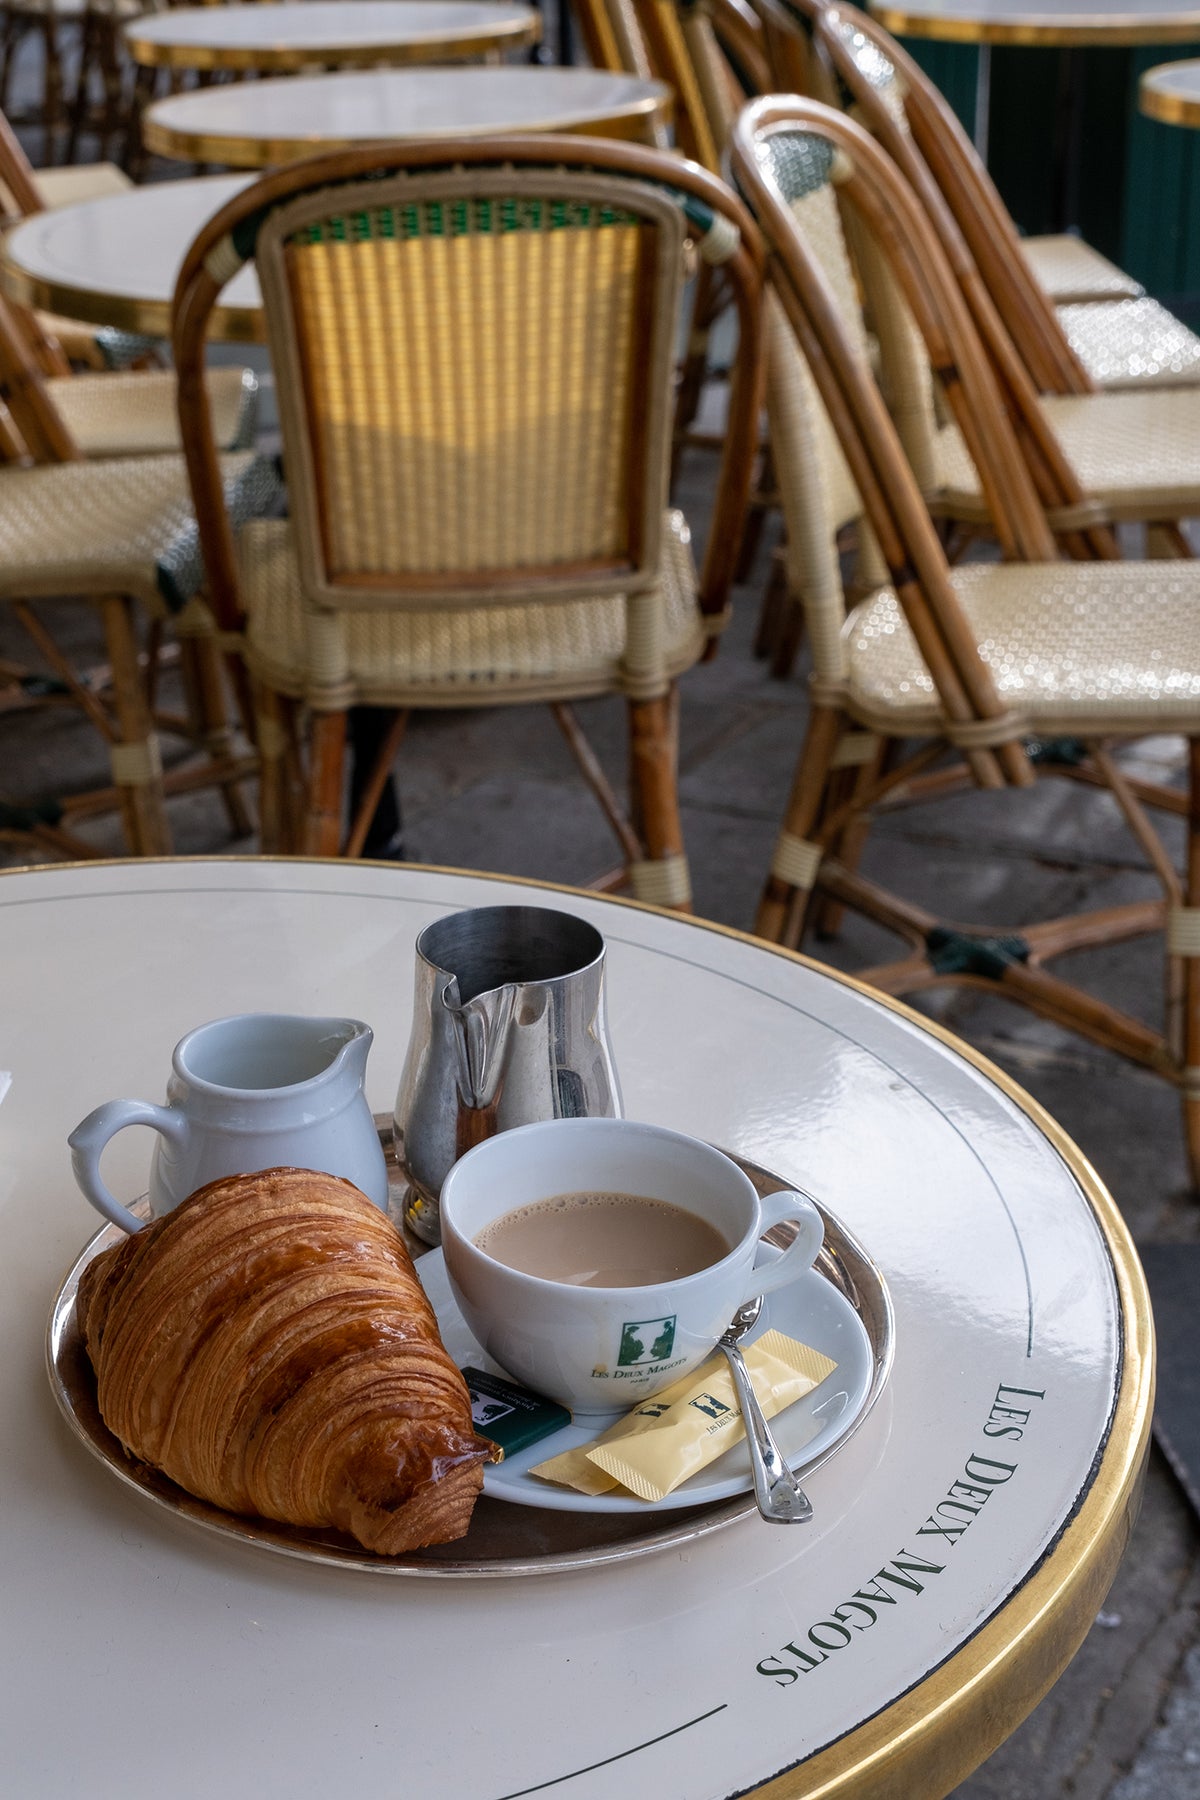 Morning Café and Croissant at Les Deux Magots